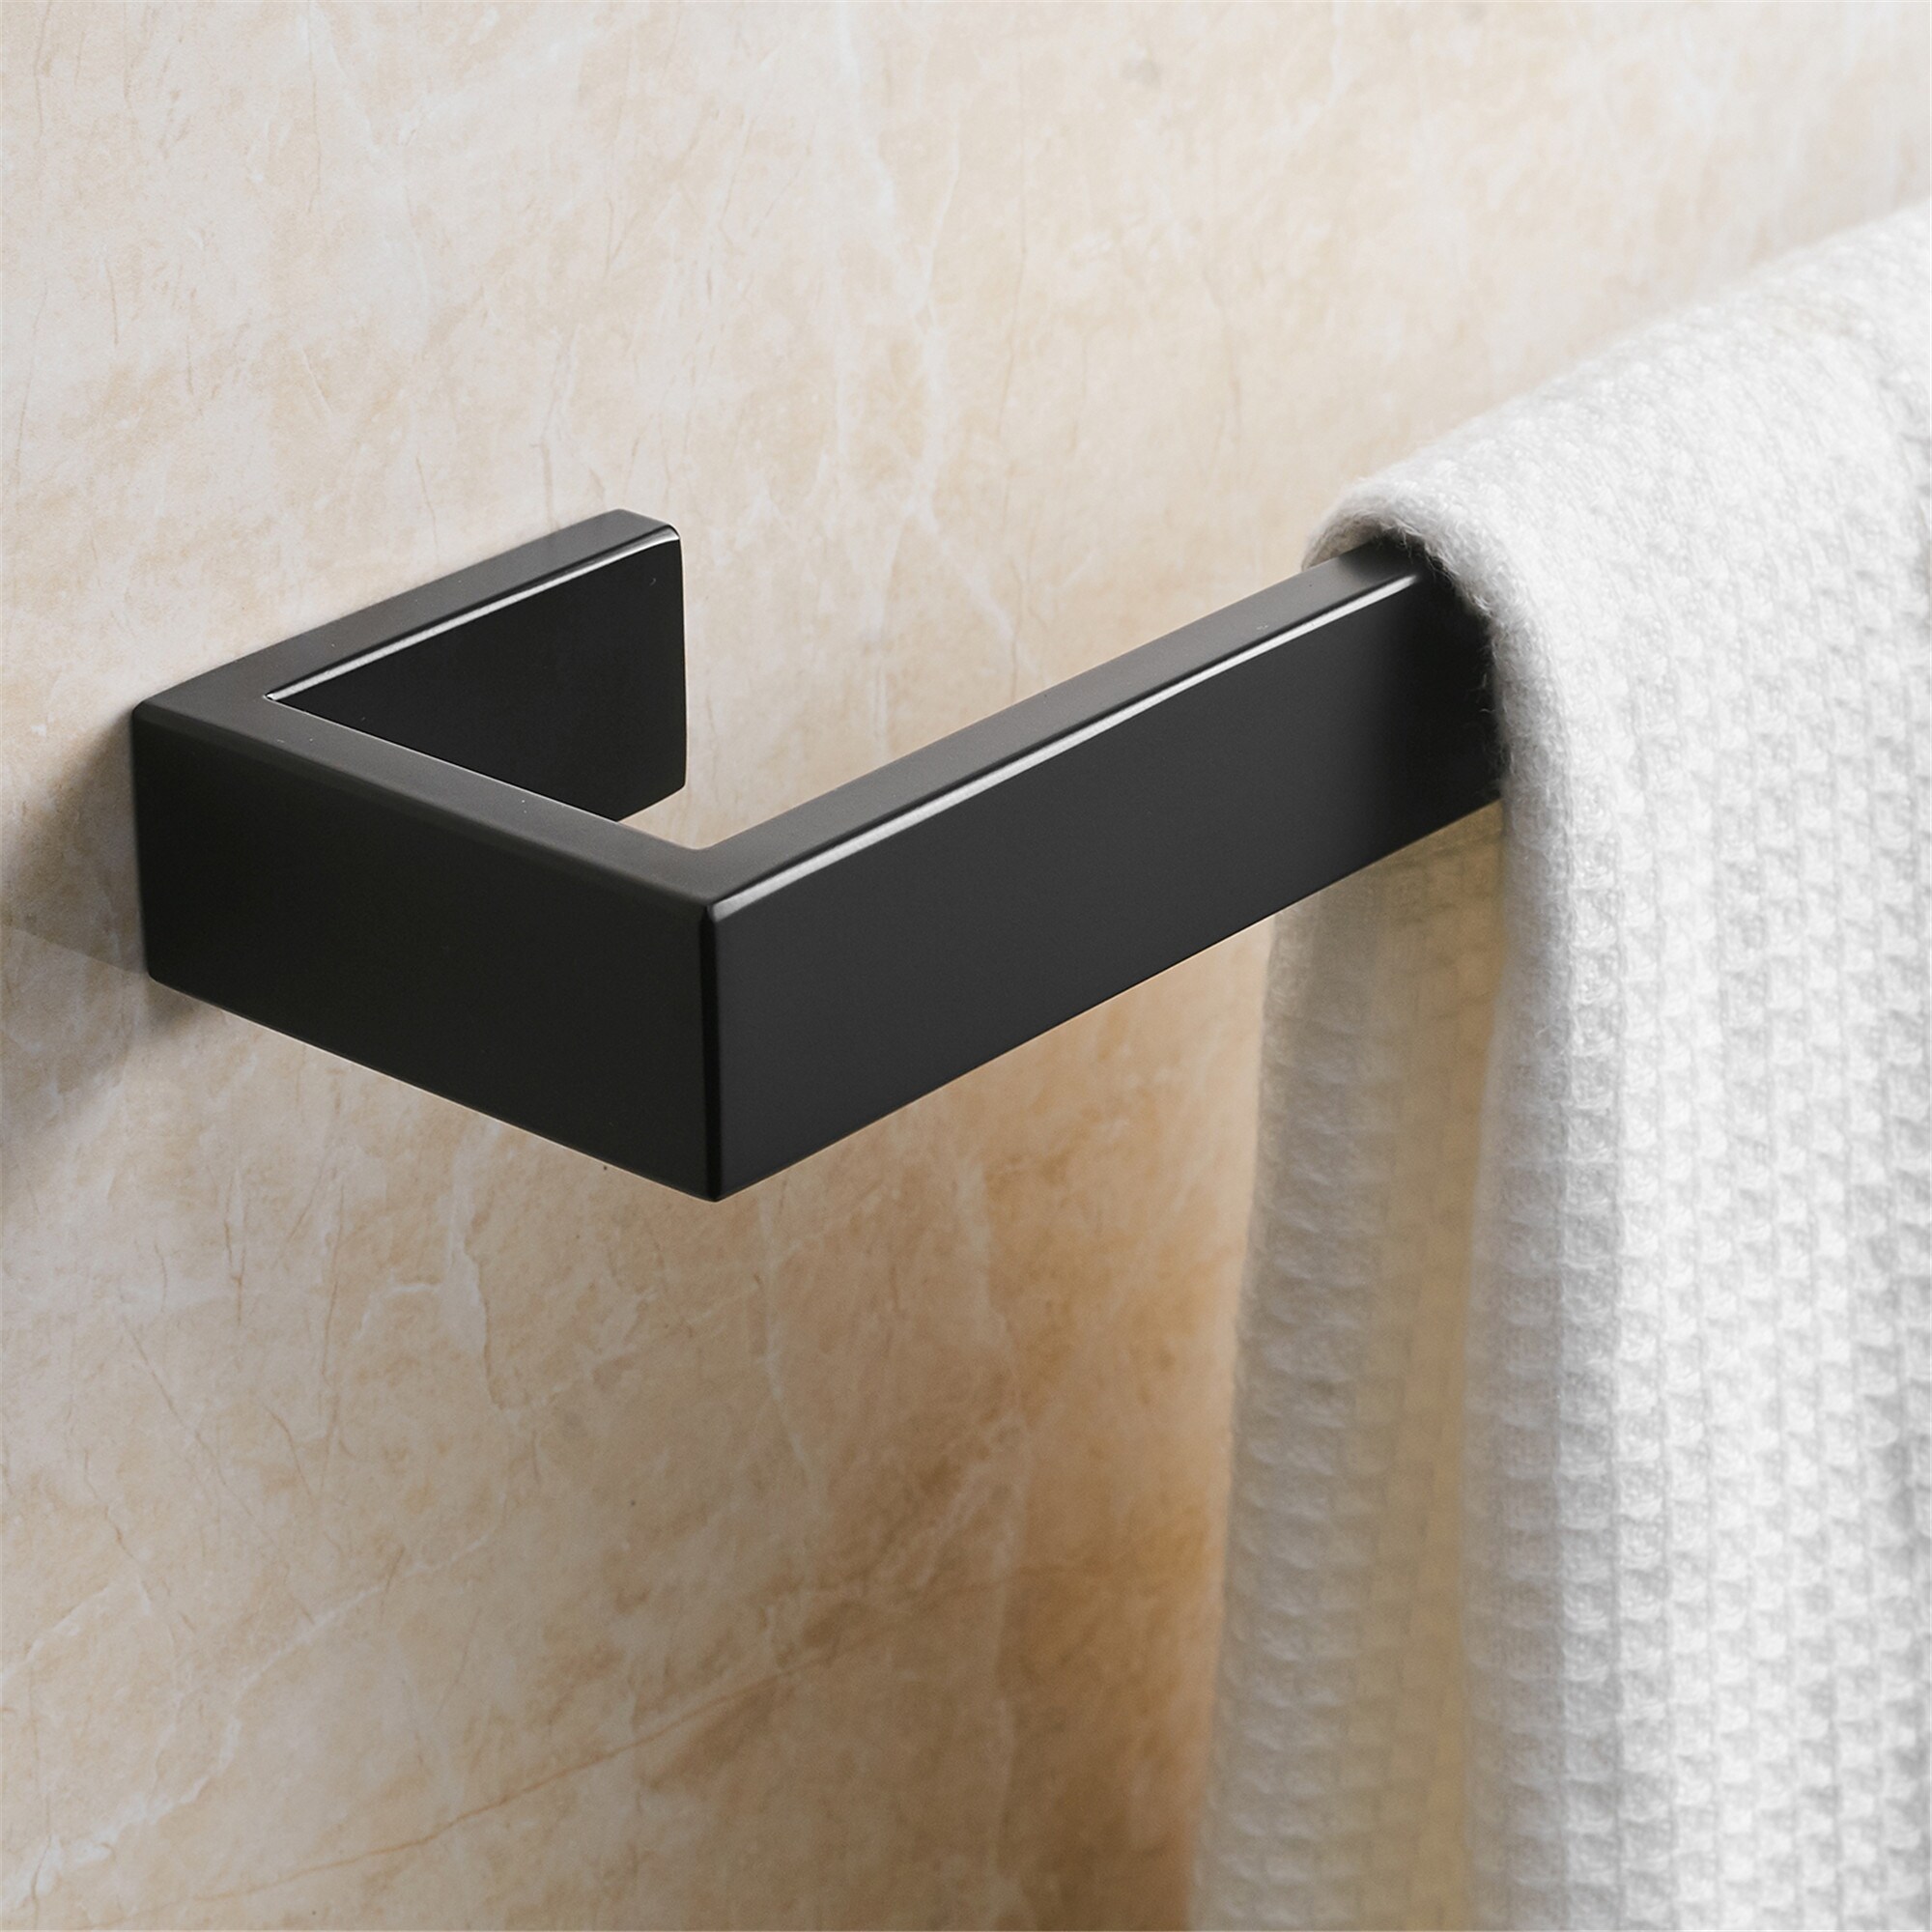 Stainless Steel Matte Black Bathroom Towel Rack Towel Bar